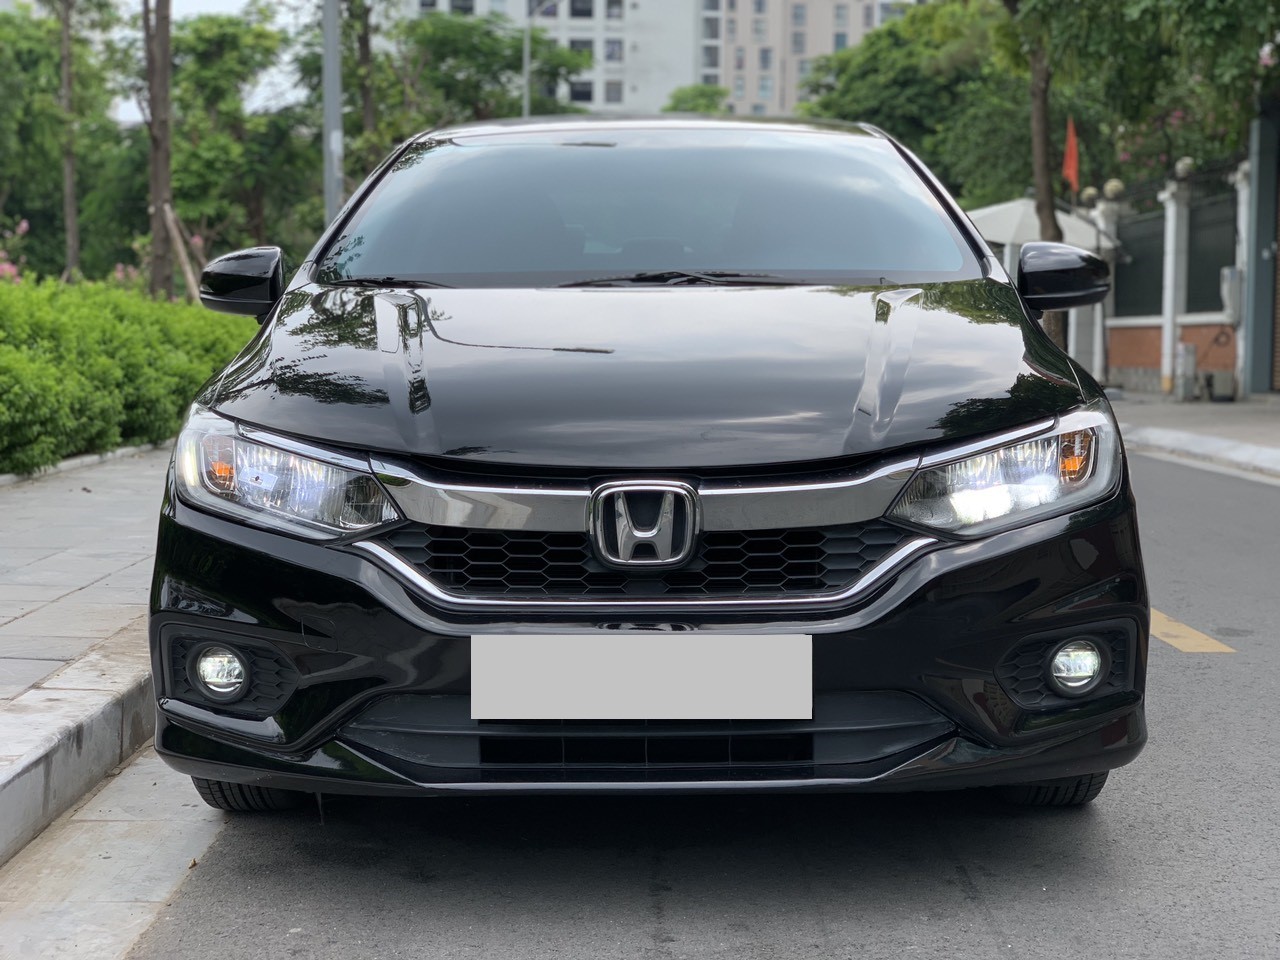 Đánh giá xe Honda City 15 CVT TOP phiên bản cao cấp 2018 mới